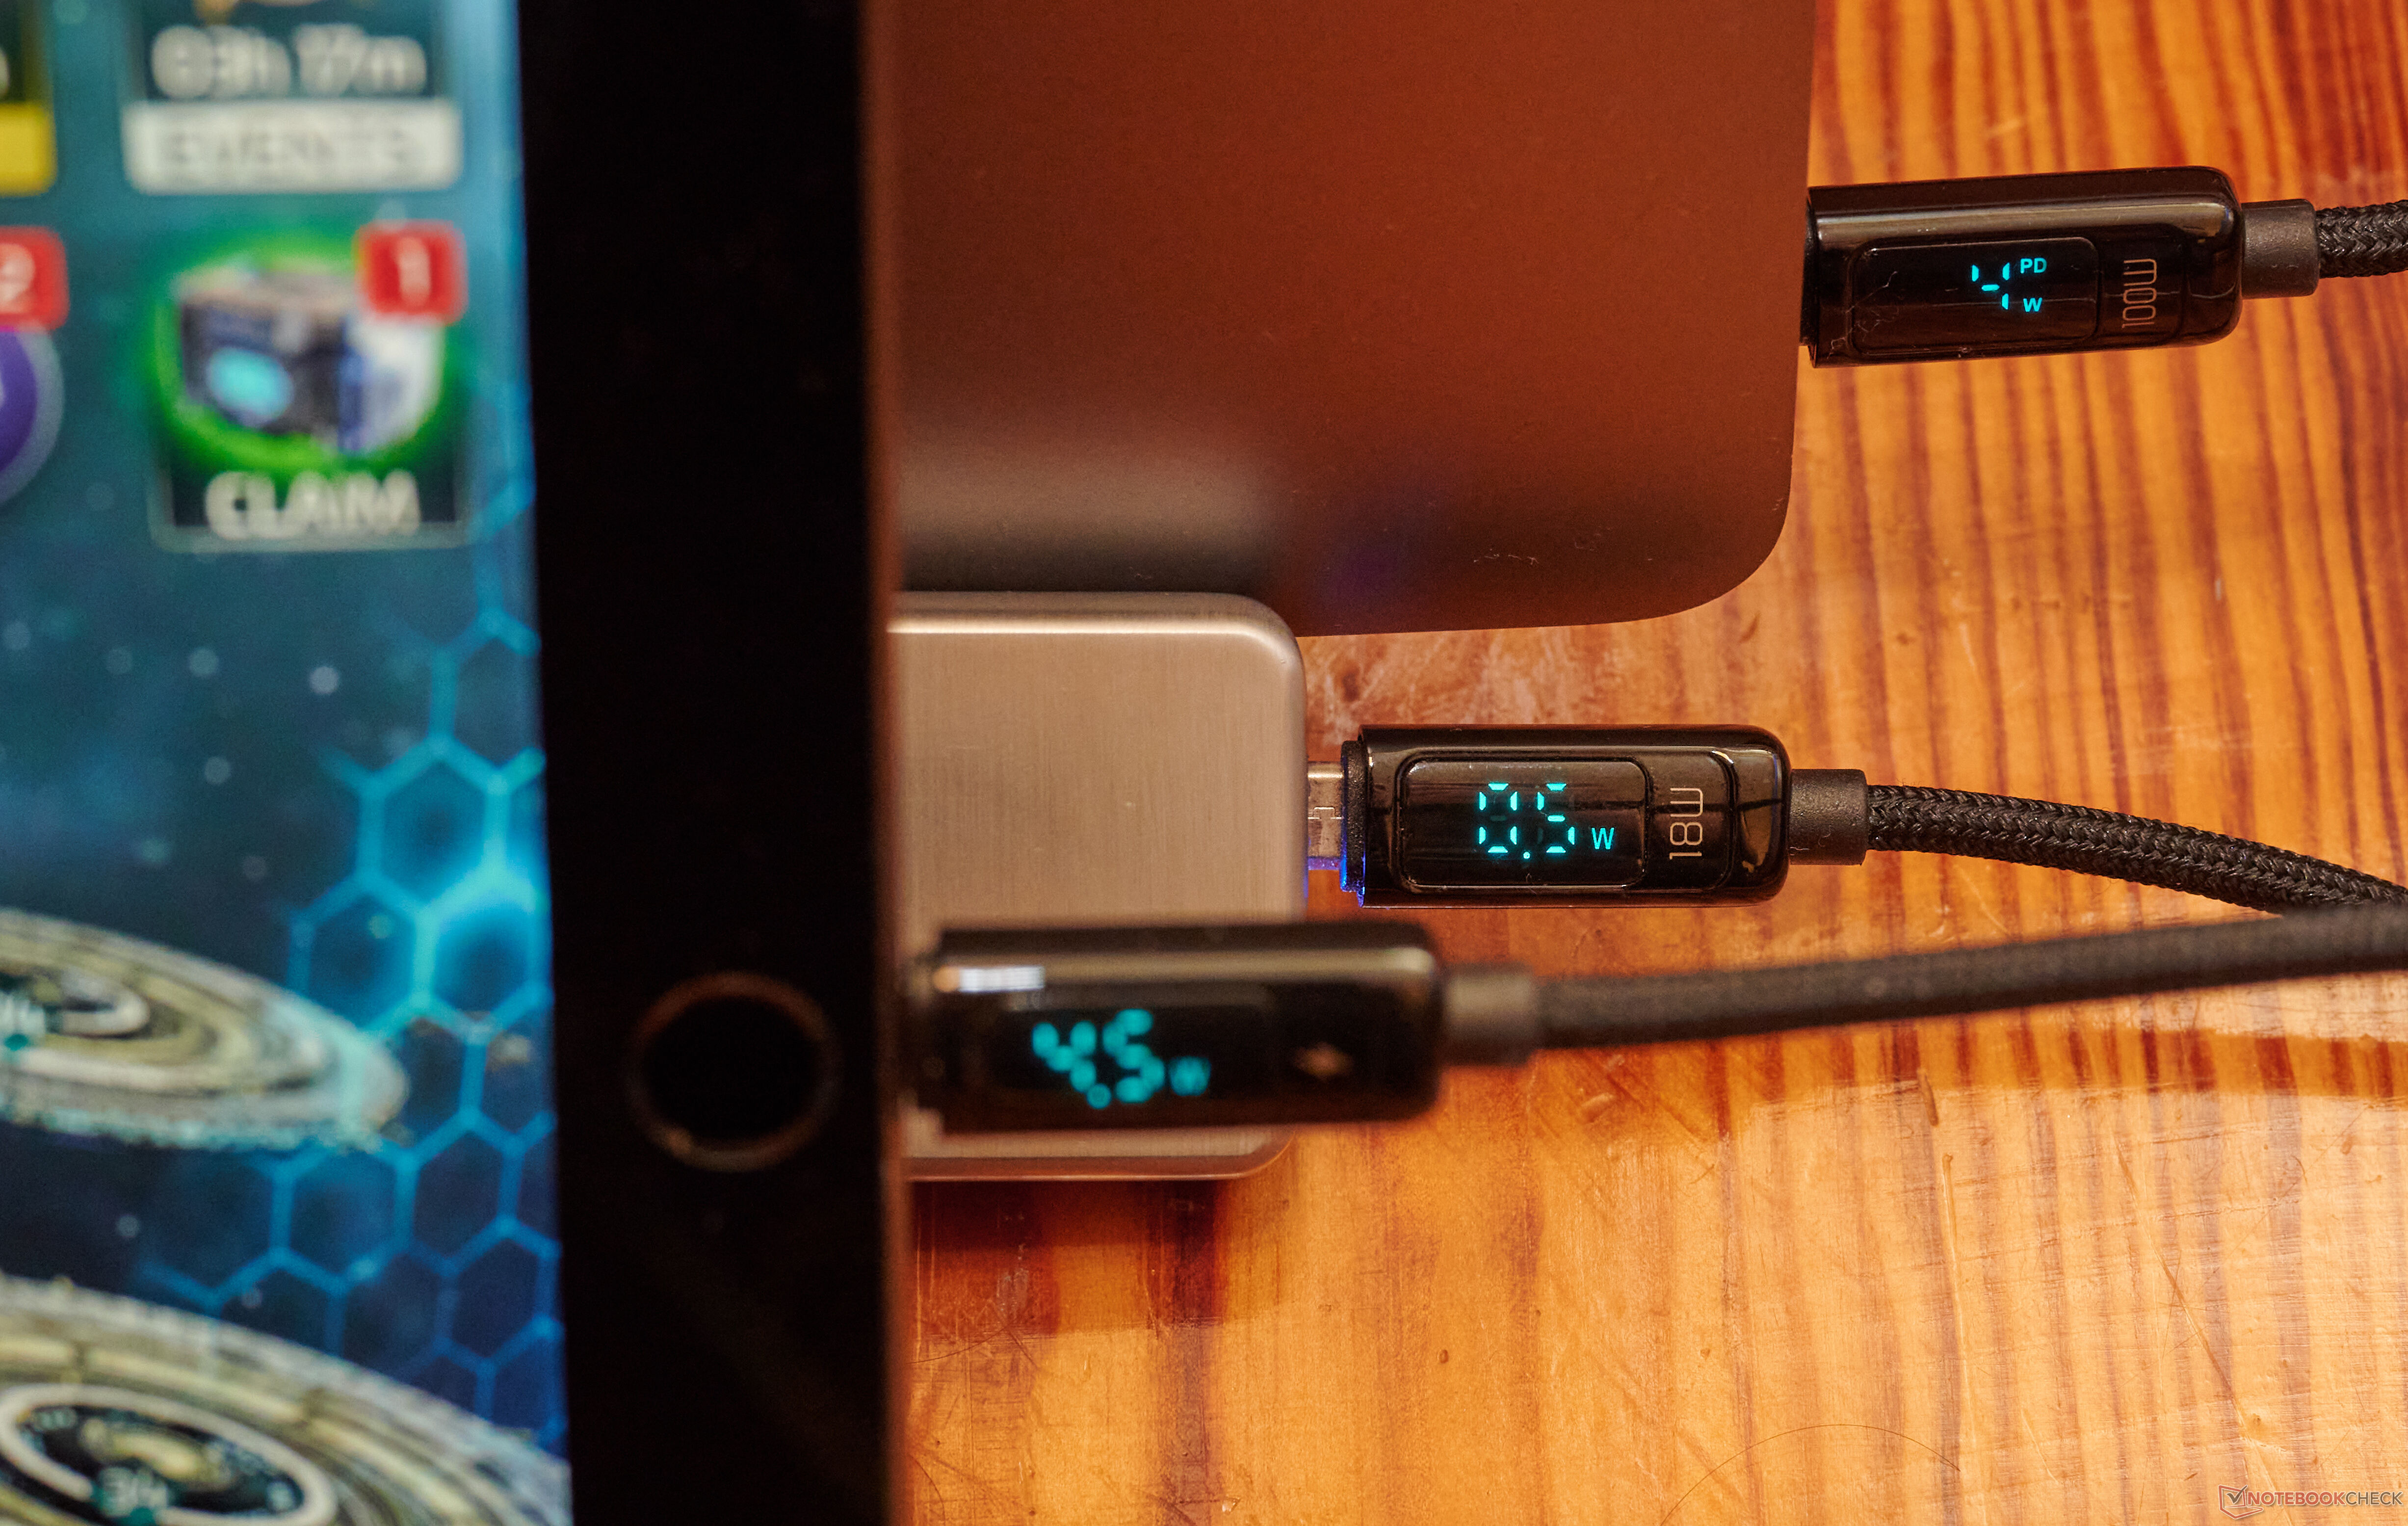 Akkus laden mit USB-C: Das sollten Sie wissen – Tipps zum Auffinden des  richtigen Kabels, News